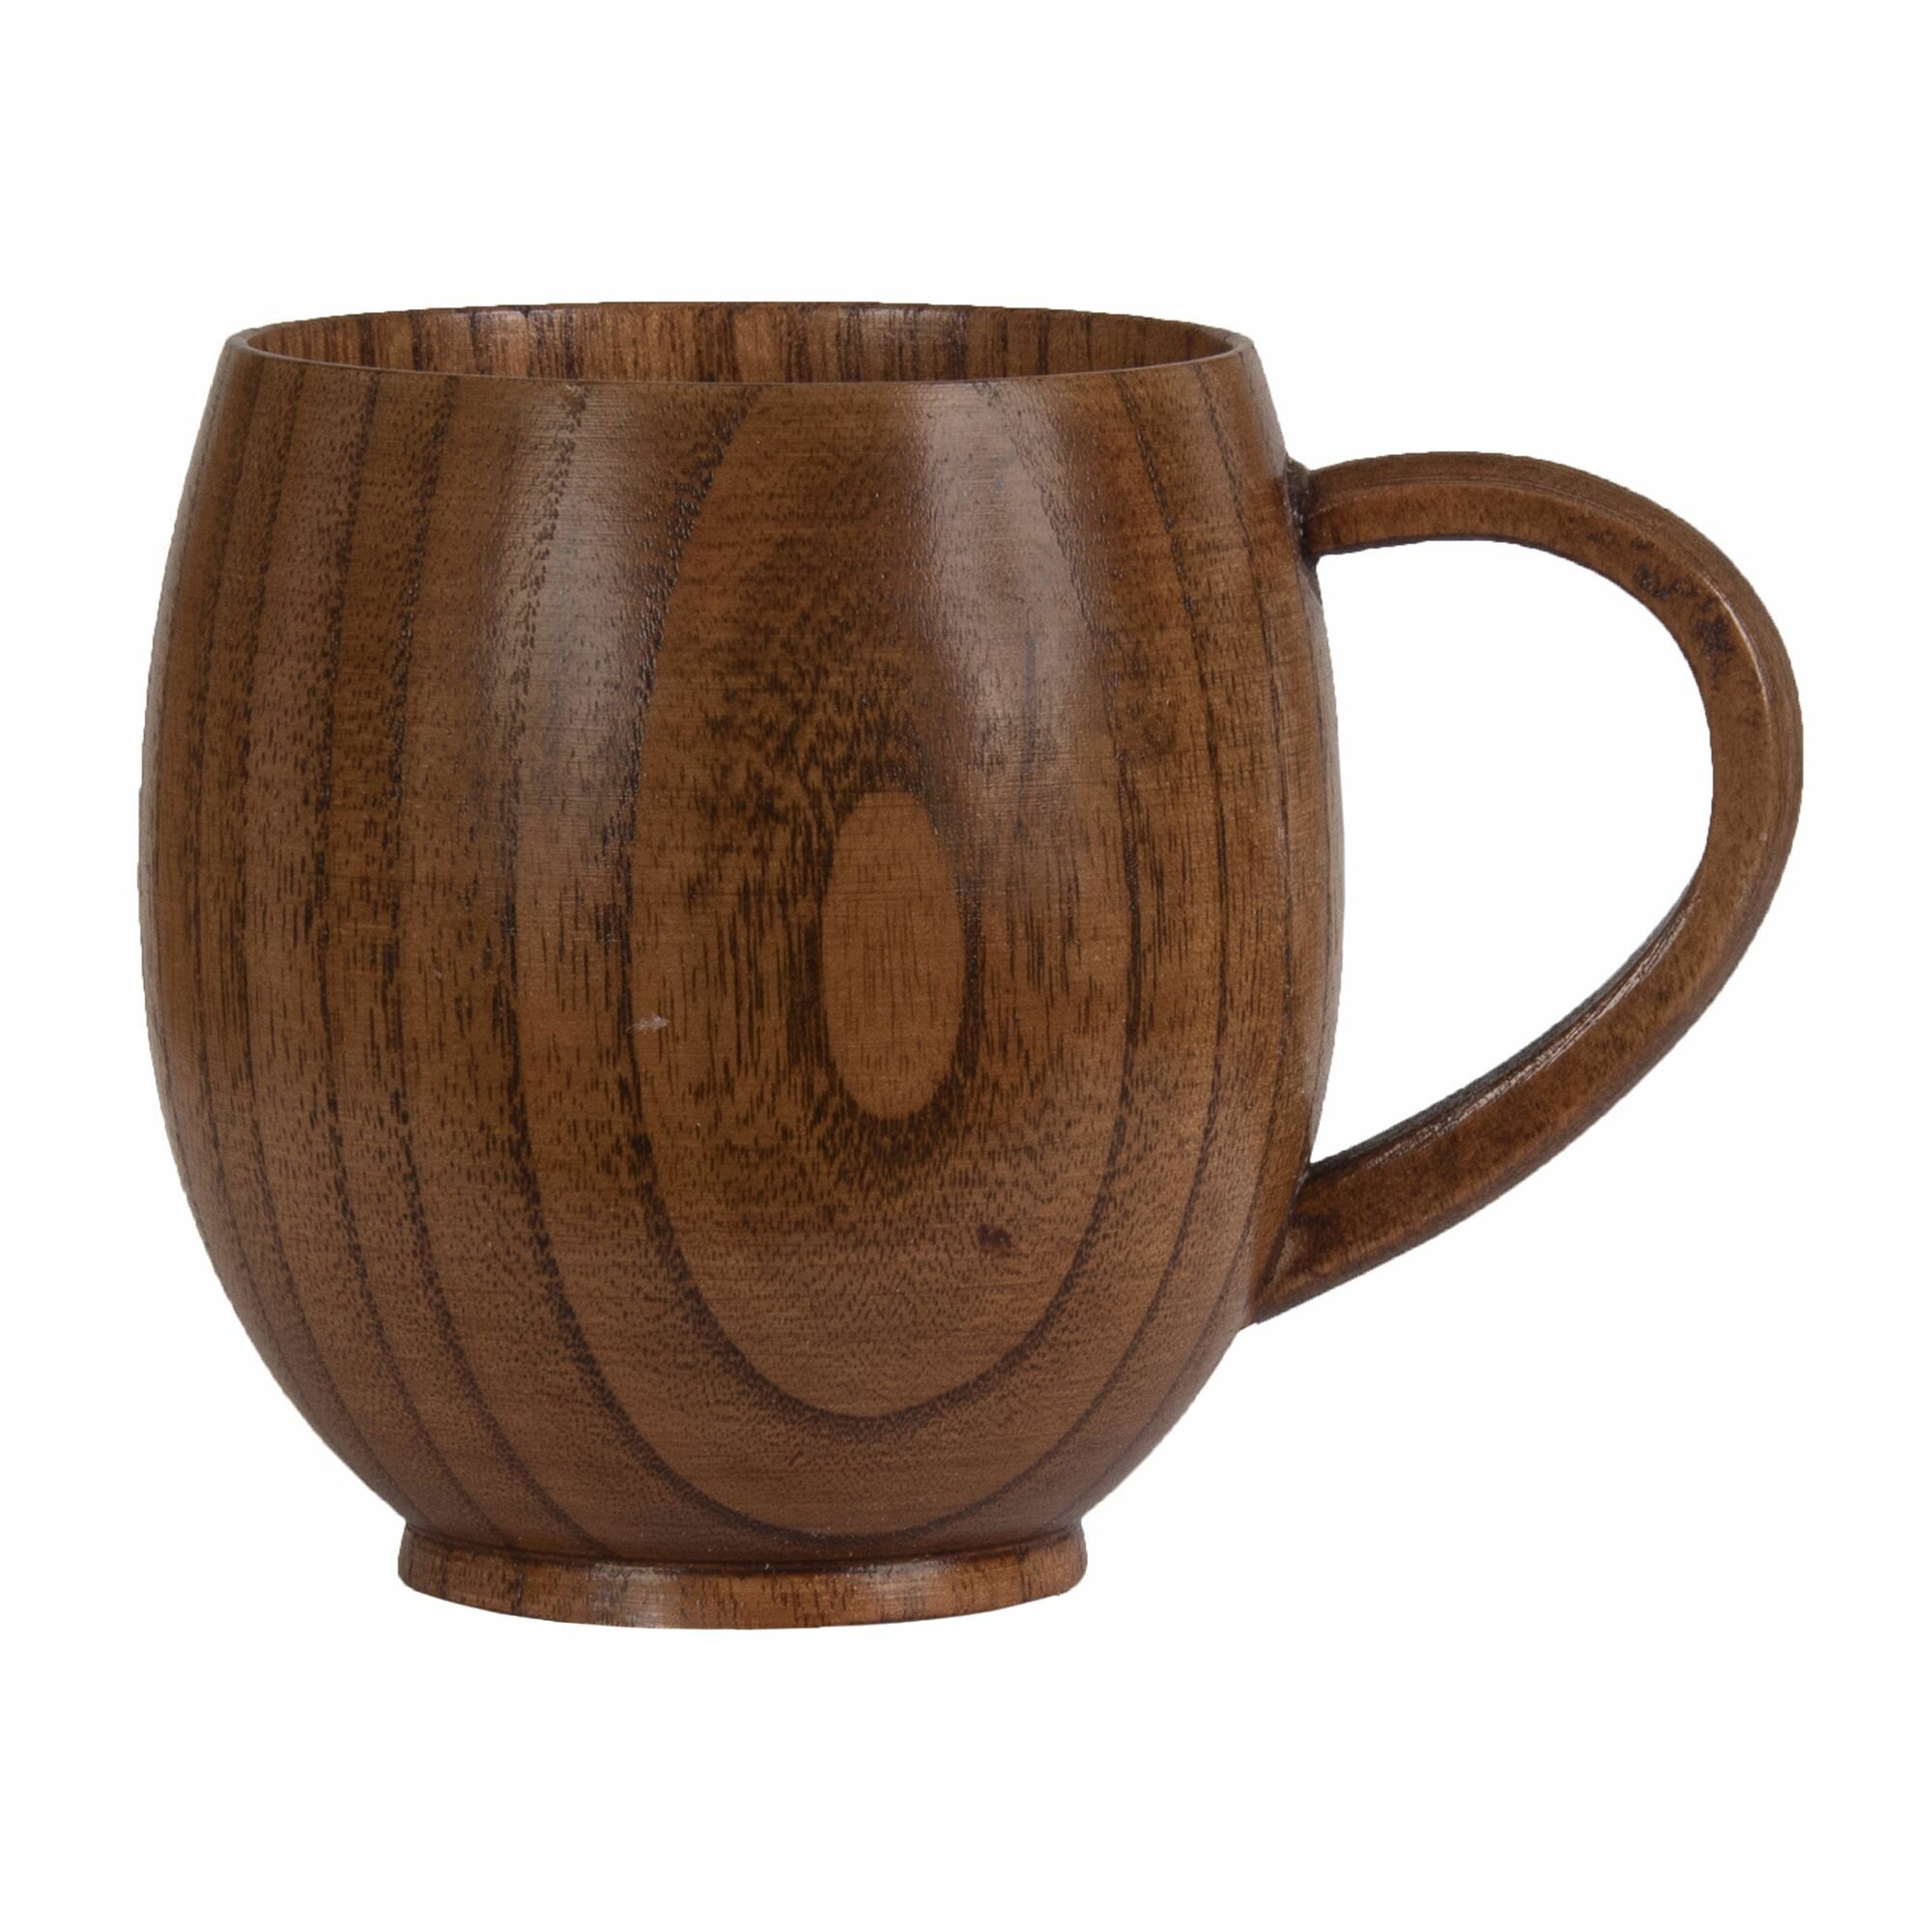 Кружка из натурального дерева / Чашка с ручкой деревянная / Деревянная посуда / Объем 250 мл